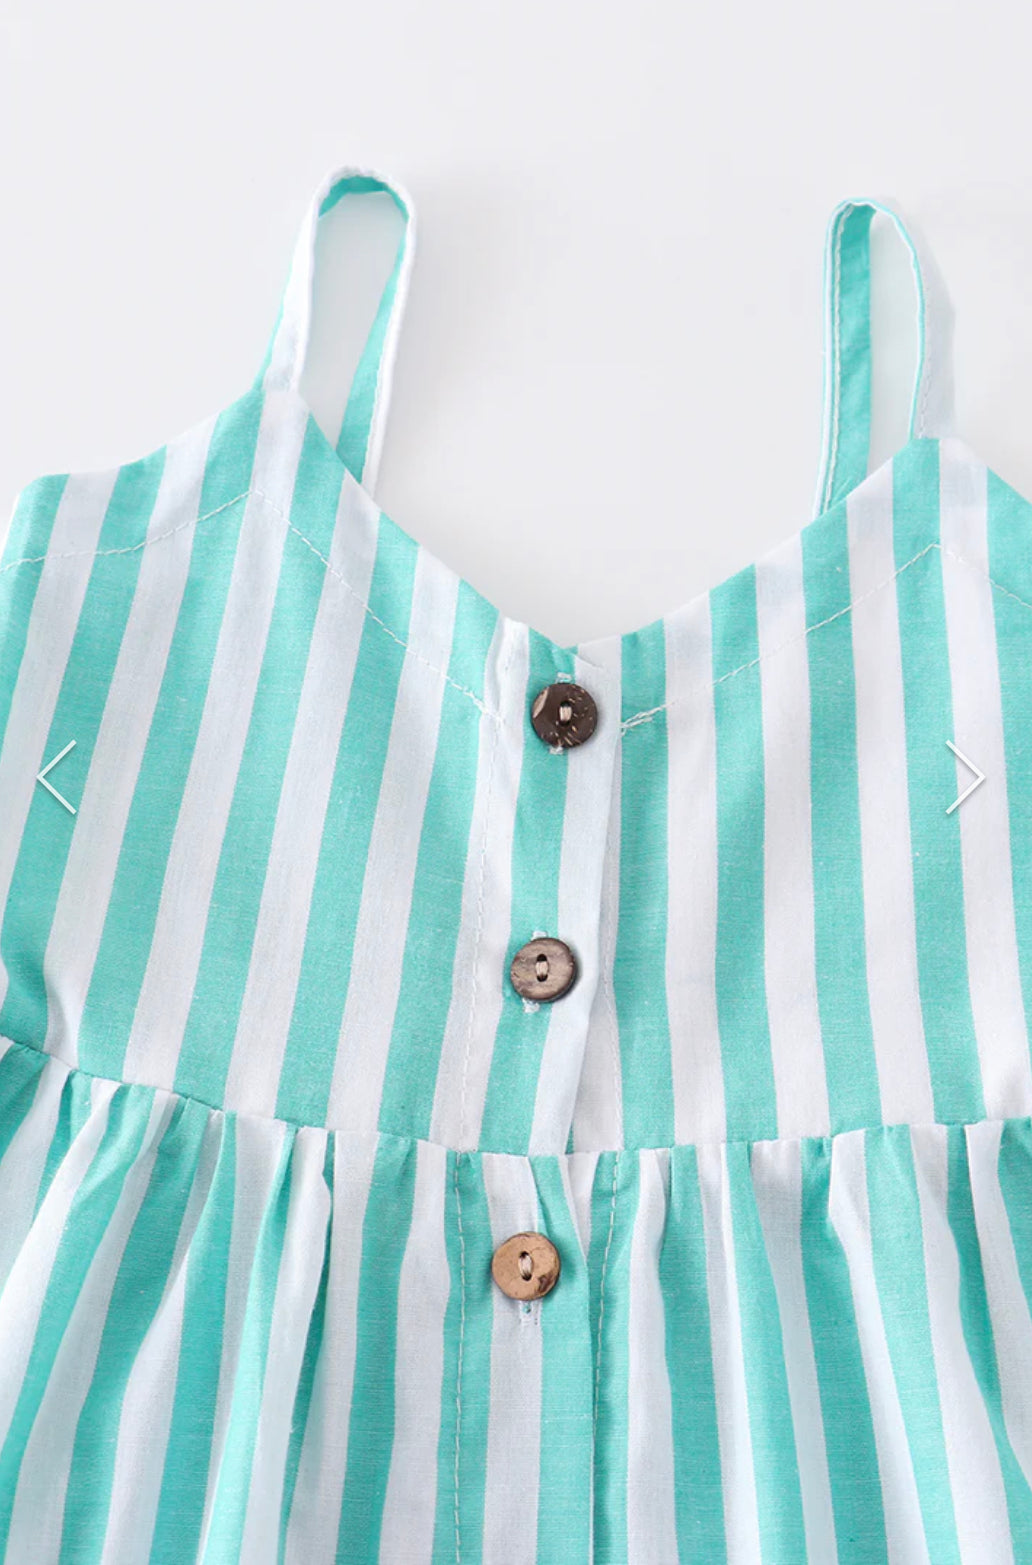 Stripe Button Down Strap Dress*